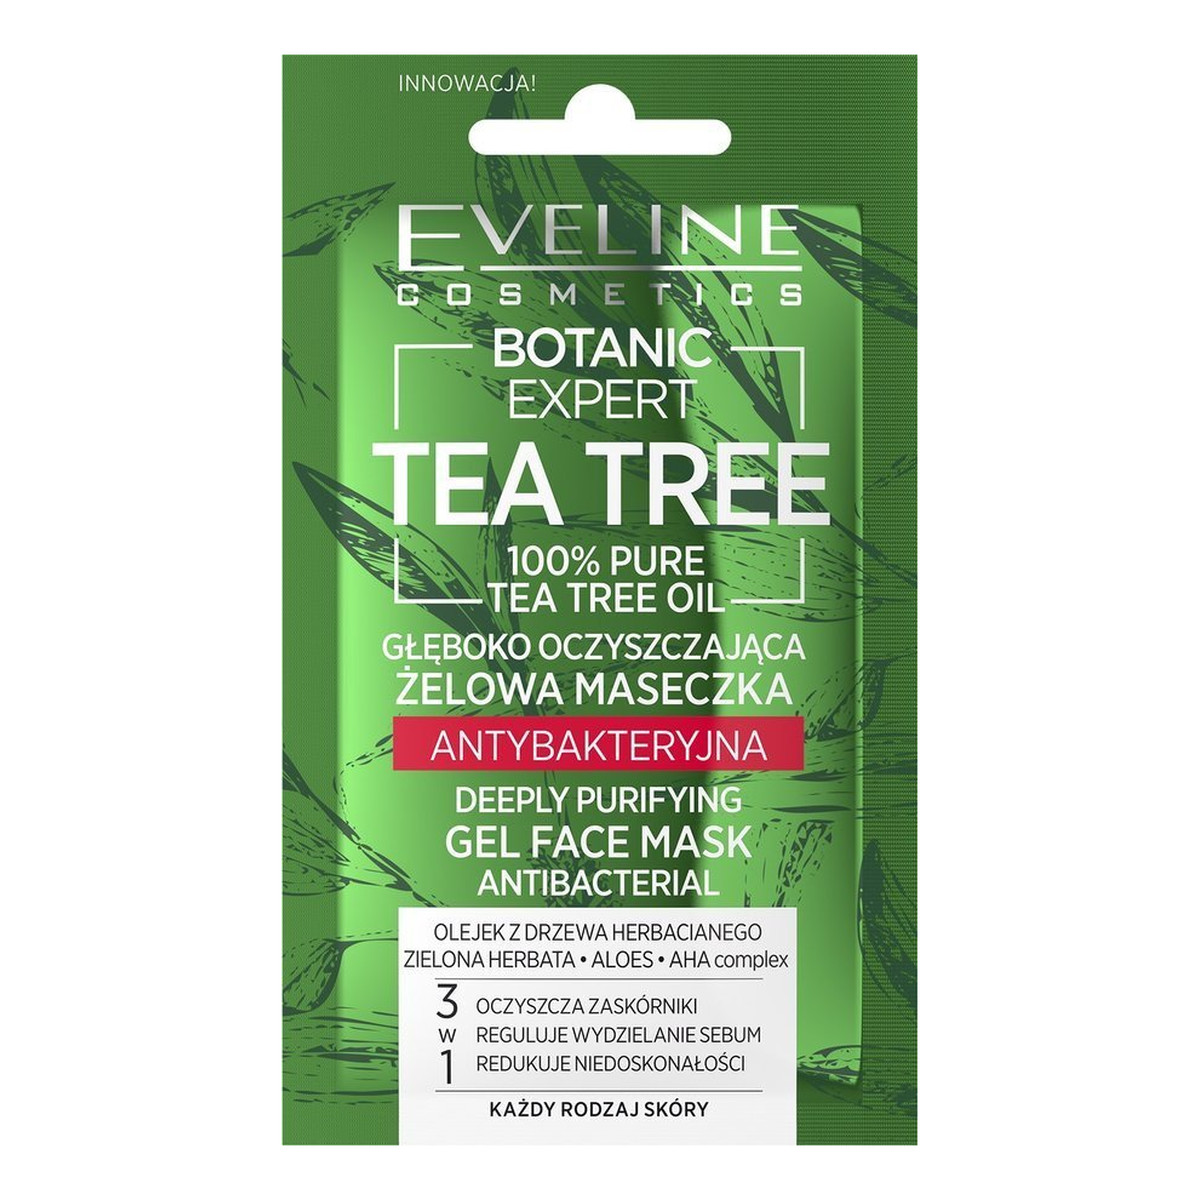 Eveline Botanic Expert Tea Tree Żelowa Maseczka antybakteryjna głęboko oczyszczająca 7ml